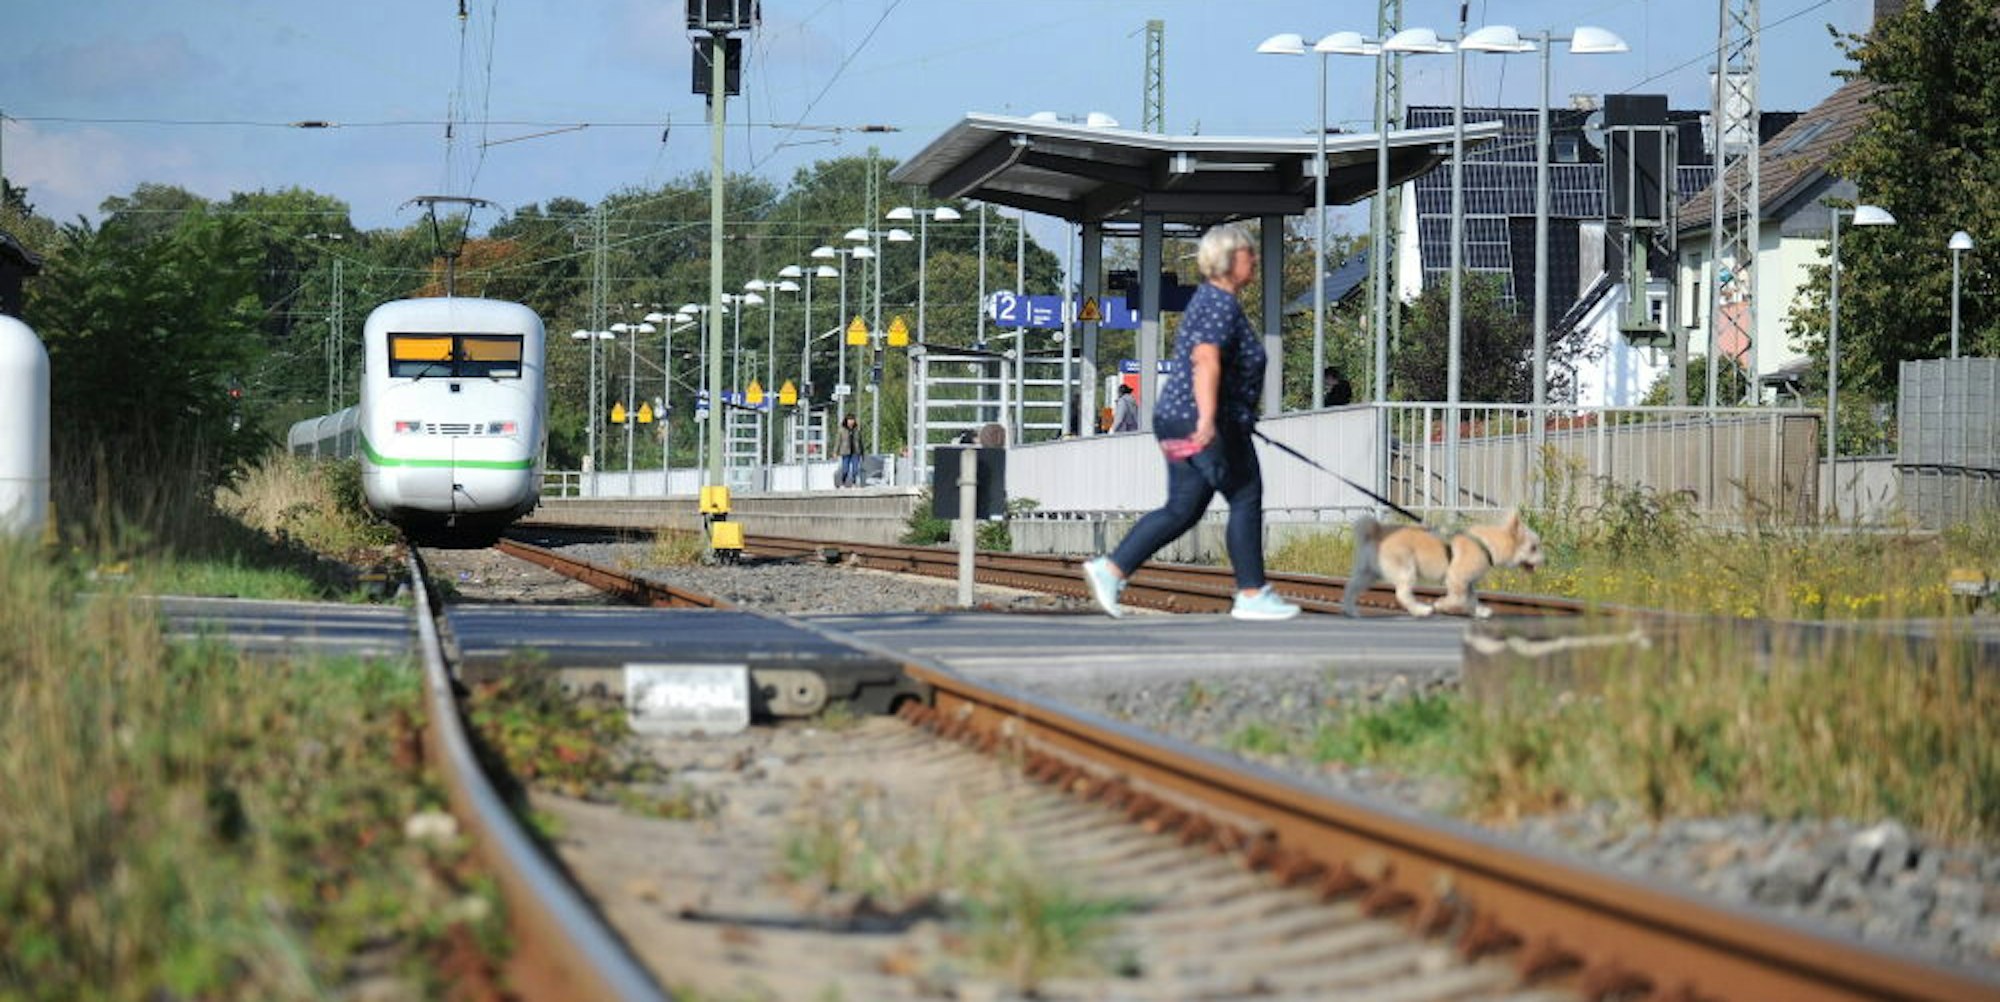 Hält am Leichlinger Bahnhof bald die S-Bahn 1 auf der Strecke zwischen Düsseldorf, Solingen, Opladen und Köln? Die SPD berichtet aus den Beratungen im Nahverkehrsverband, dass diese Strecke für die Verlängerung der S 1 ausgesucht worden ist.